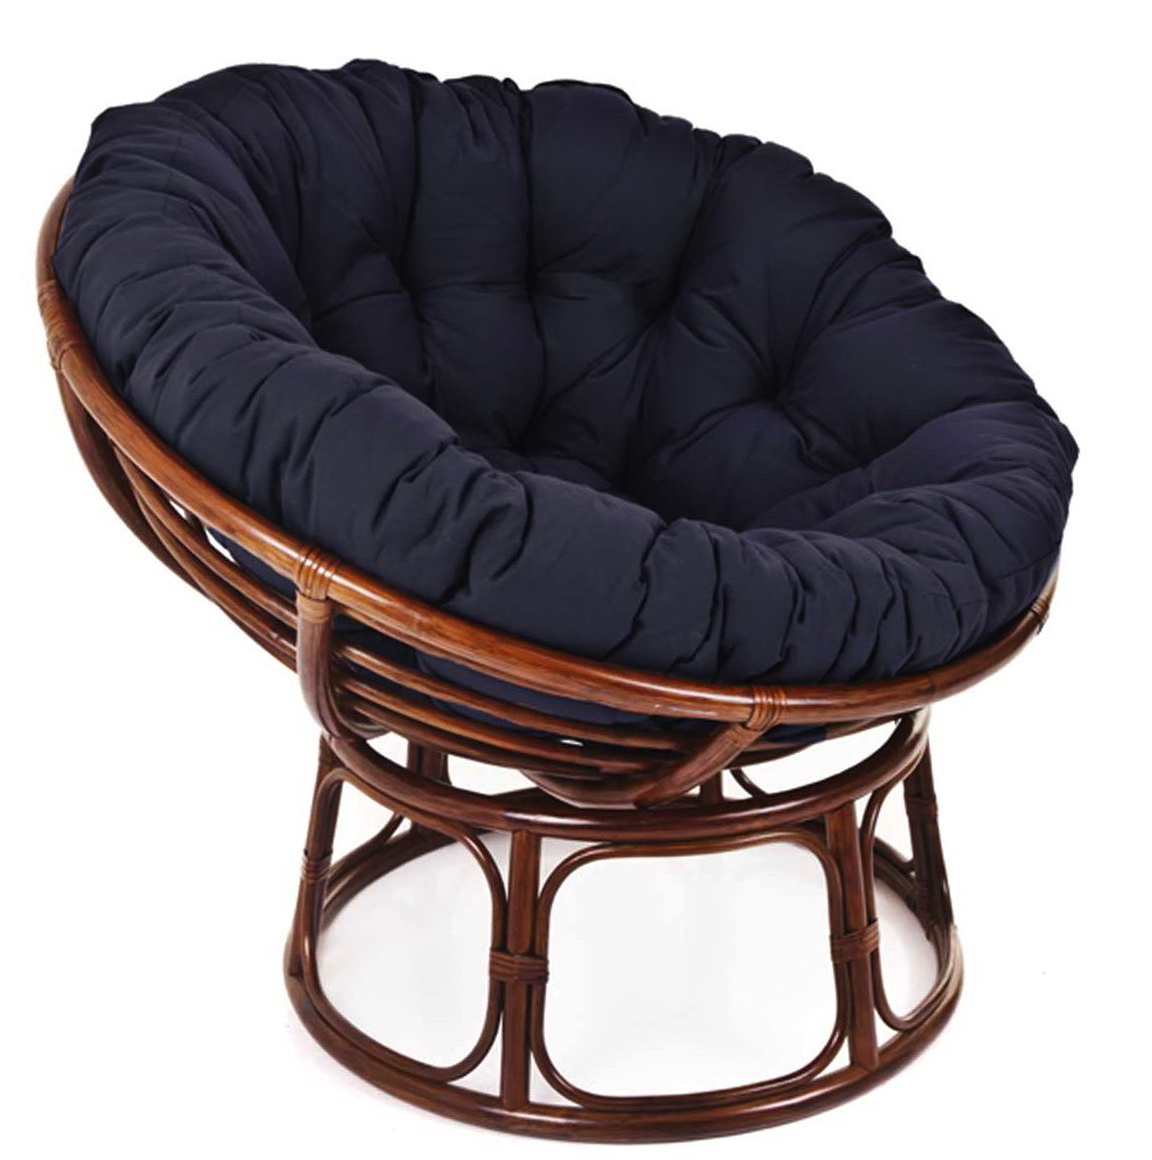 Papasan Chair Cushion Amazon Home Design Ideas